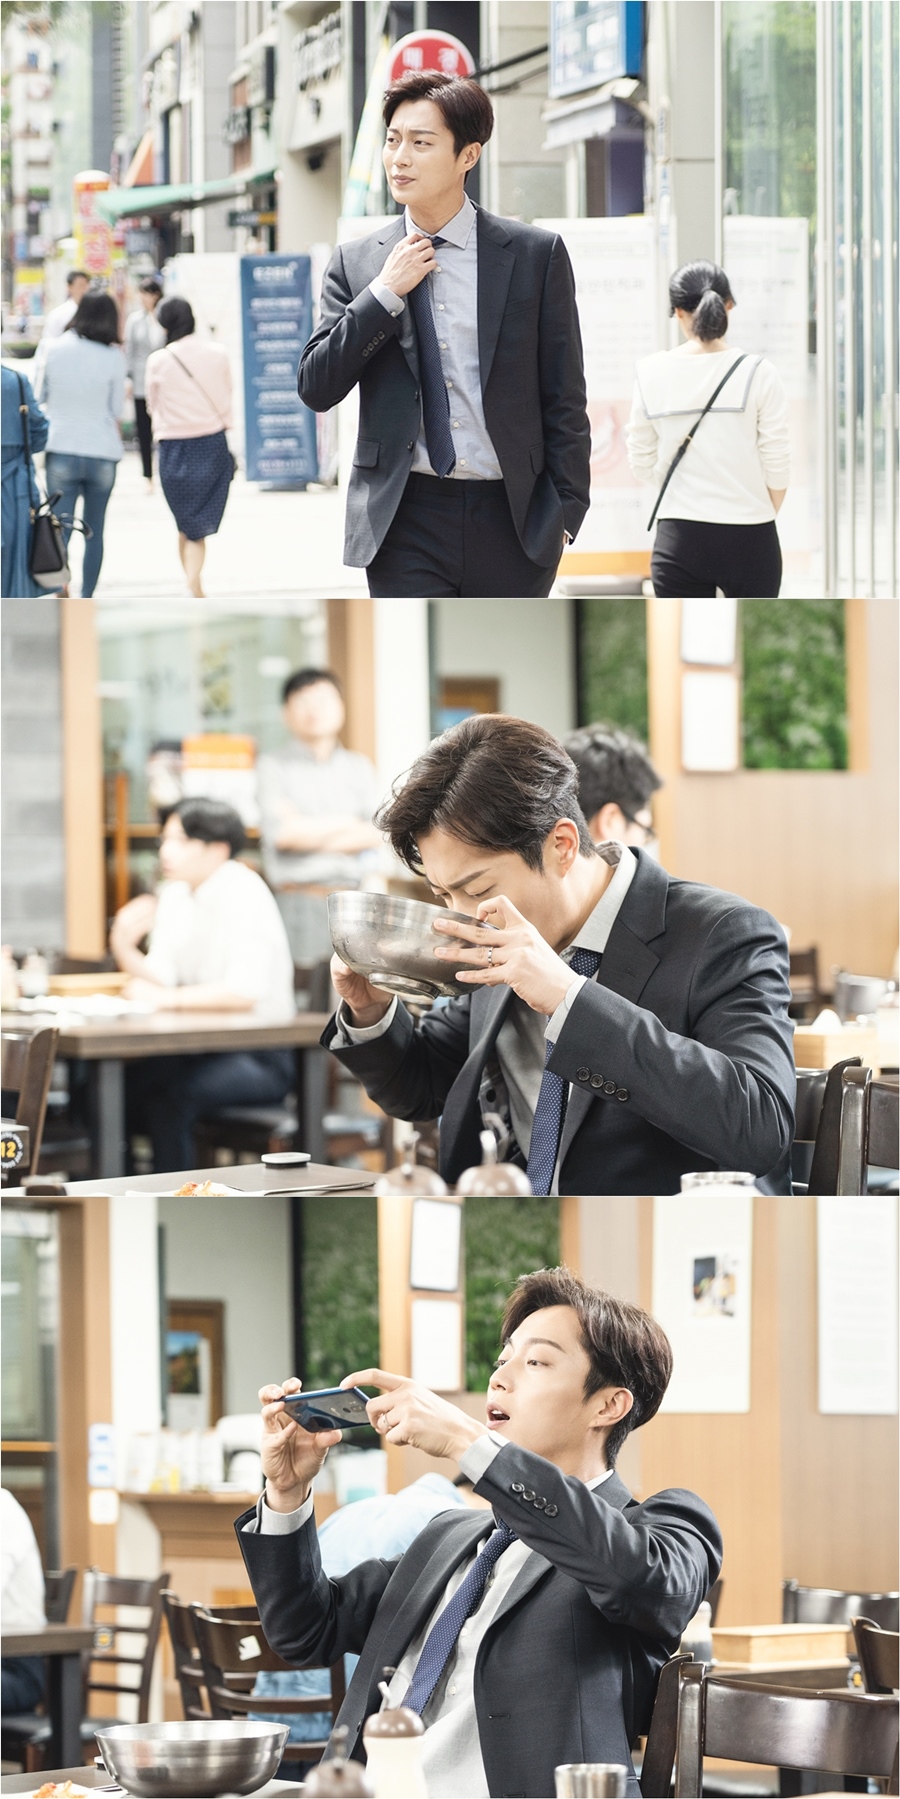 윤두준 '식샤를 합시다3:비긴즈' 촬영 스틸 공개 / 사진: tvN 제공